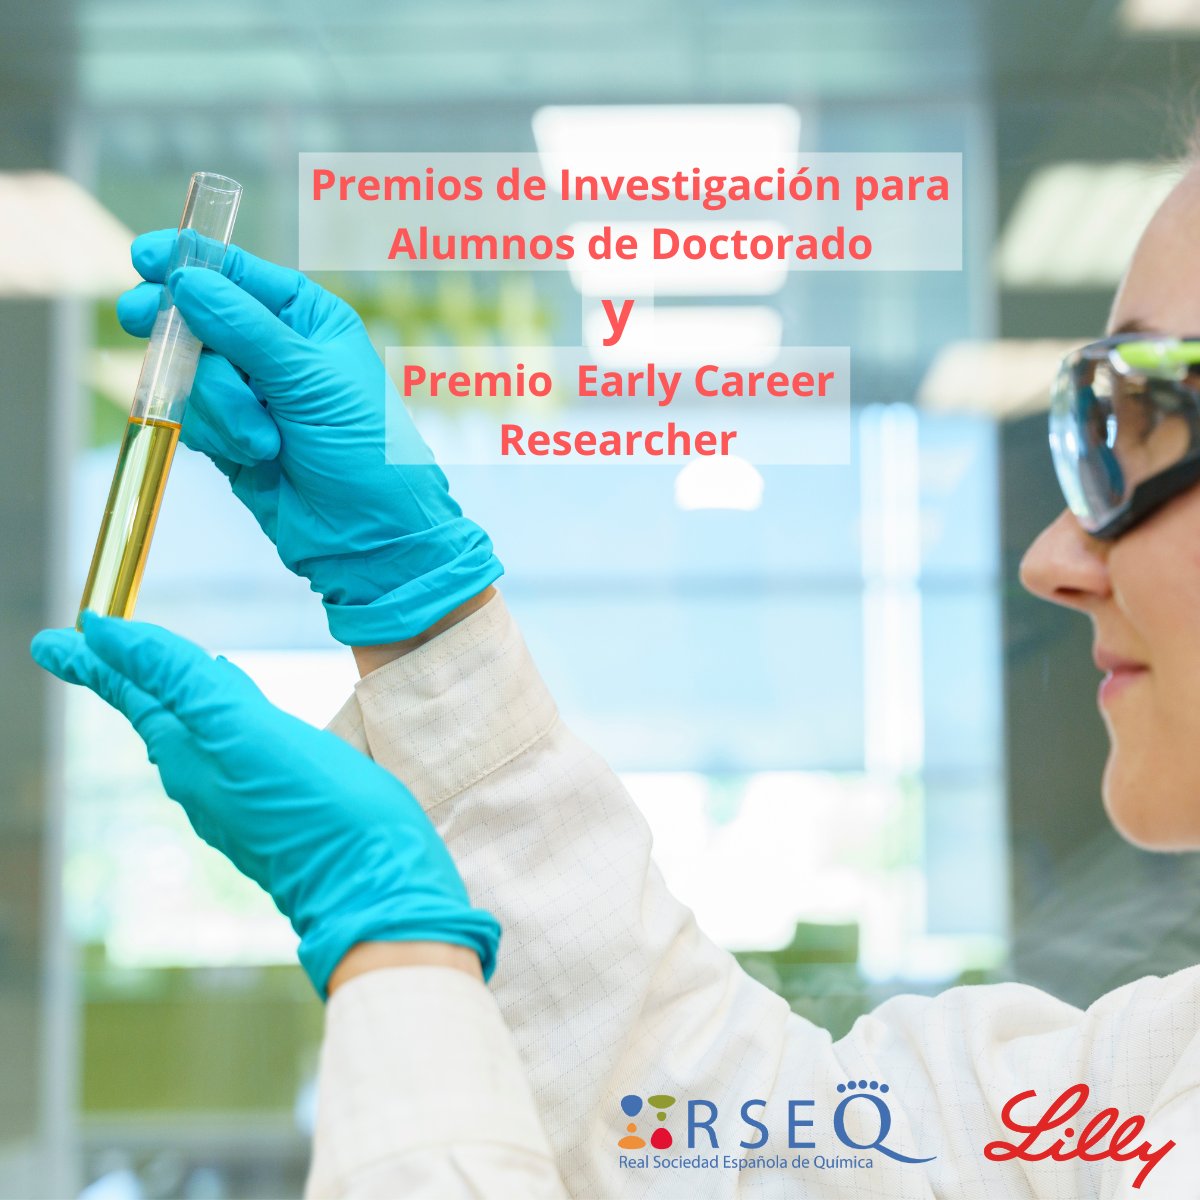 🏆La @RSEQUIMICA y @LillyES convocan sus premios anuales de investigación. Los XXII Premios para alumnos de doctorado y el Early Career Researcher. ➡️acortar.link/T9gnfq